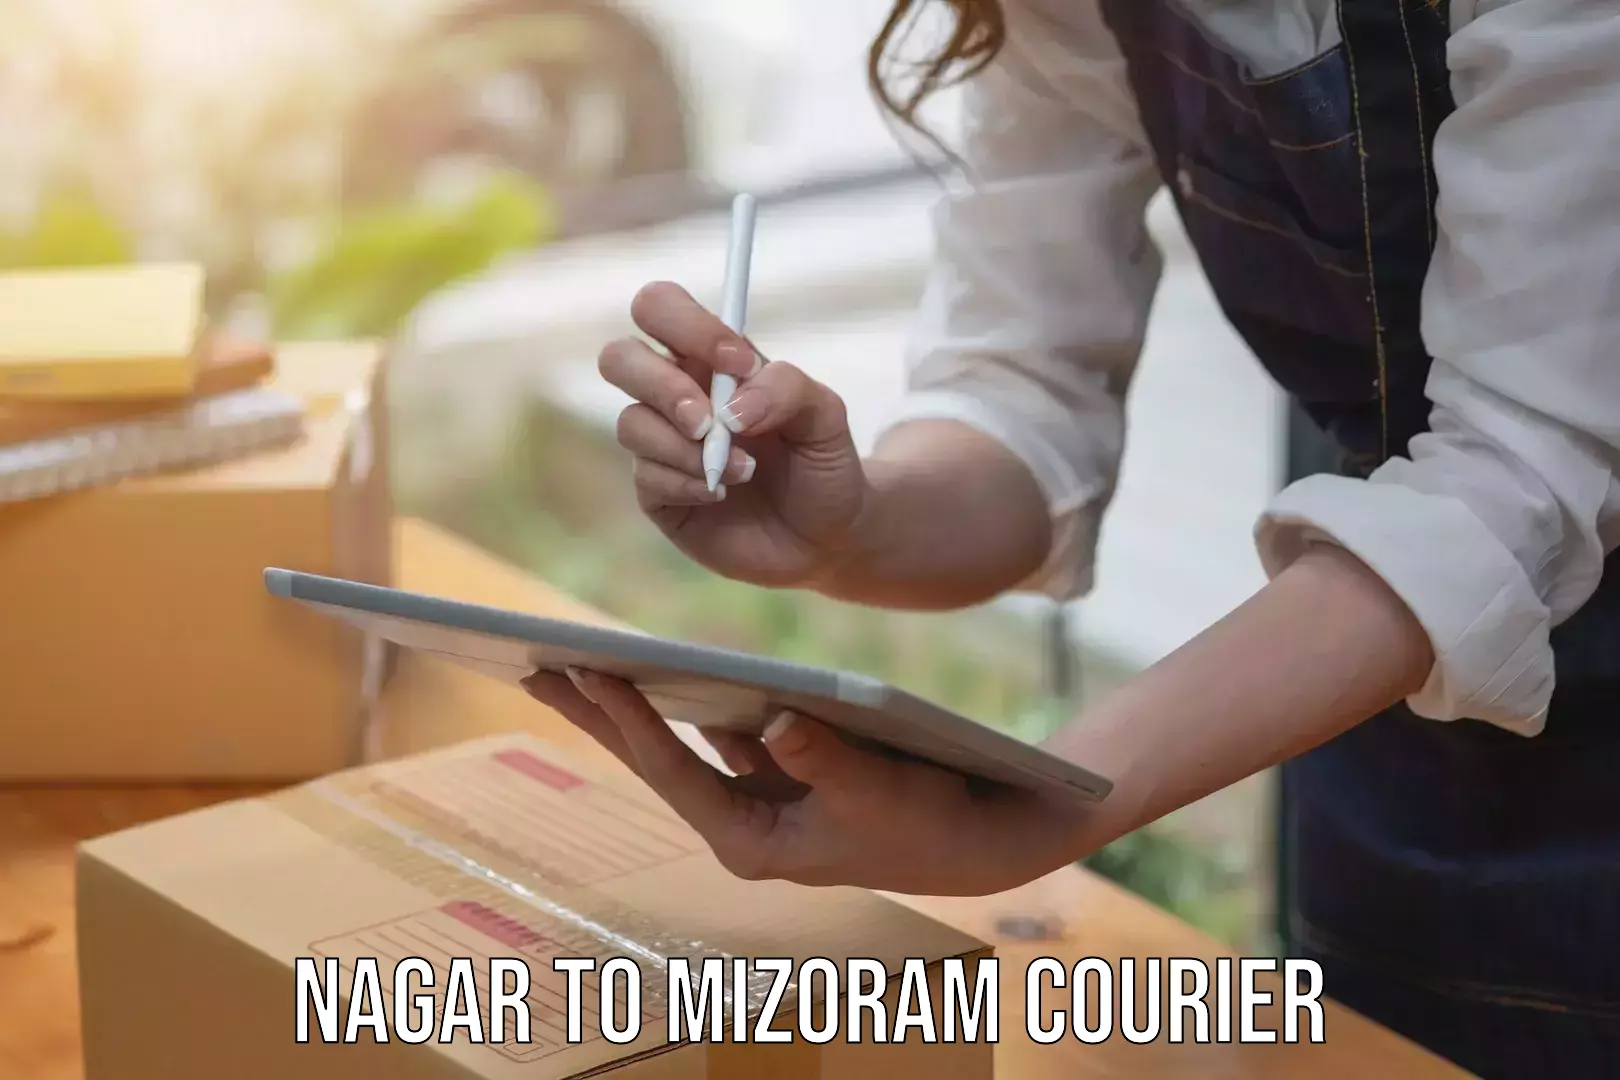 Courier service partnerships Nagar to Mizoram